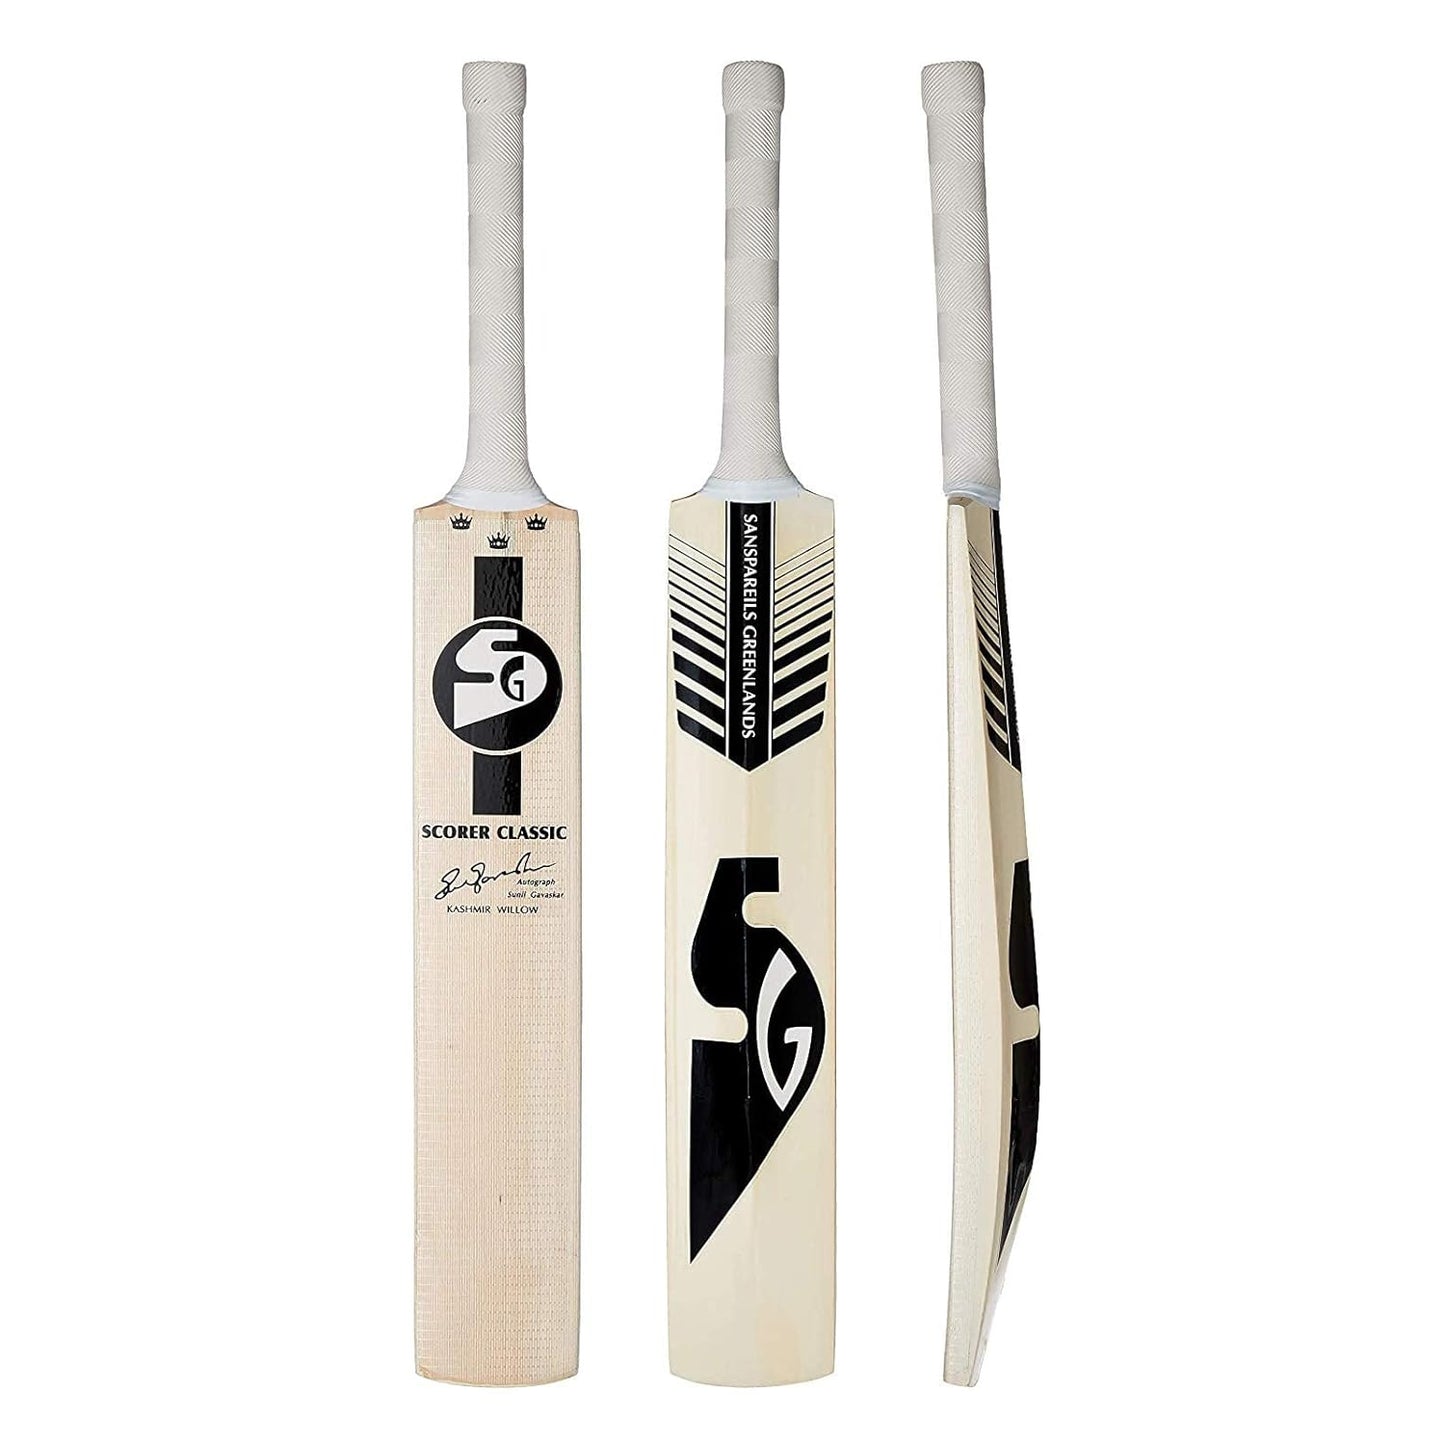 SG Scorer Classic Kashmir Willow Cricket Bat - Best Price online Prokicksports.com